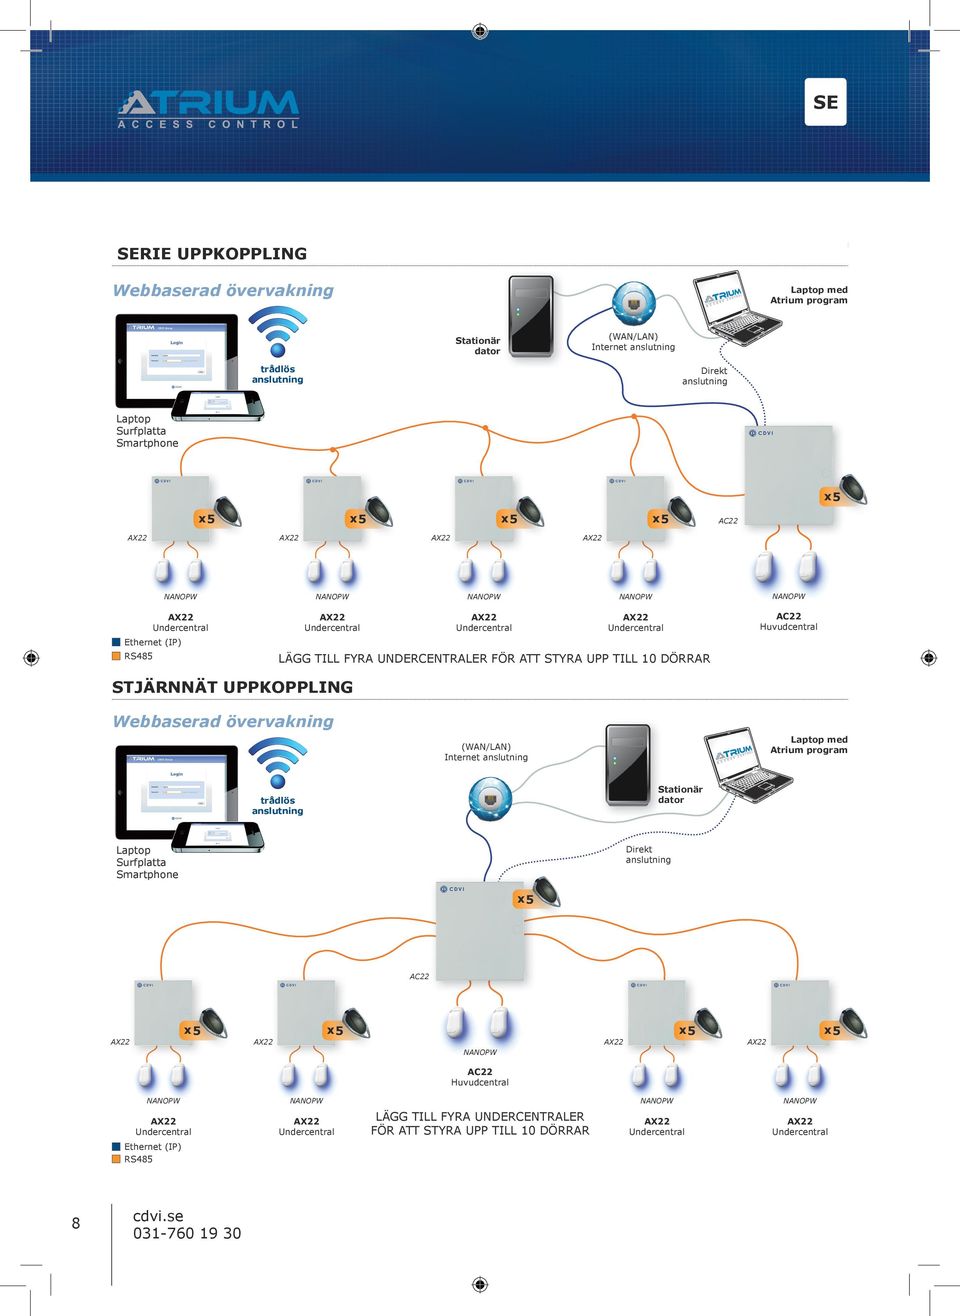 DÖRRAR STJÄRNNÄT UPPKOPPLING Webbaserad övervakning Laptop med Atrium program (WAN/LAN) Internet anslutning Stationär dator trådlös anslutning